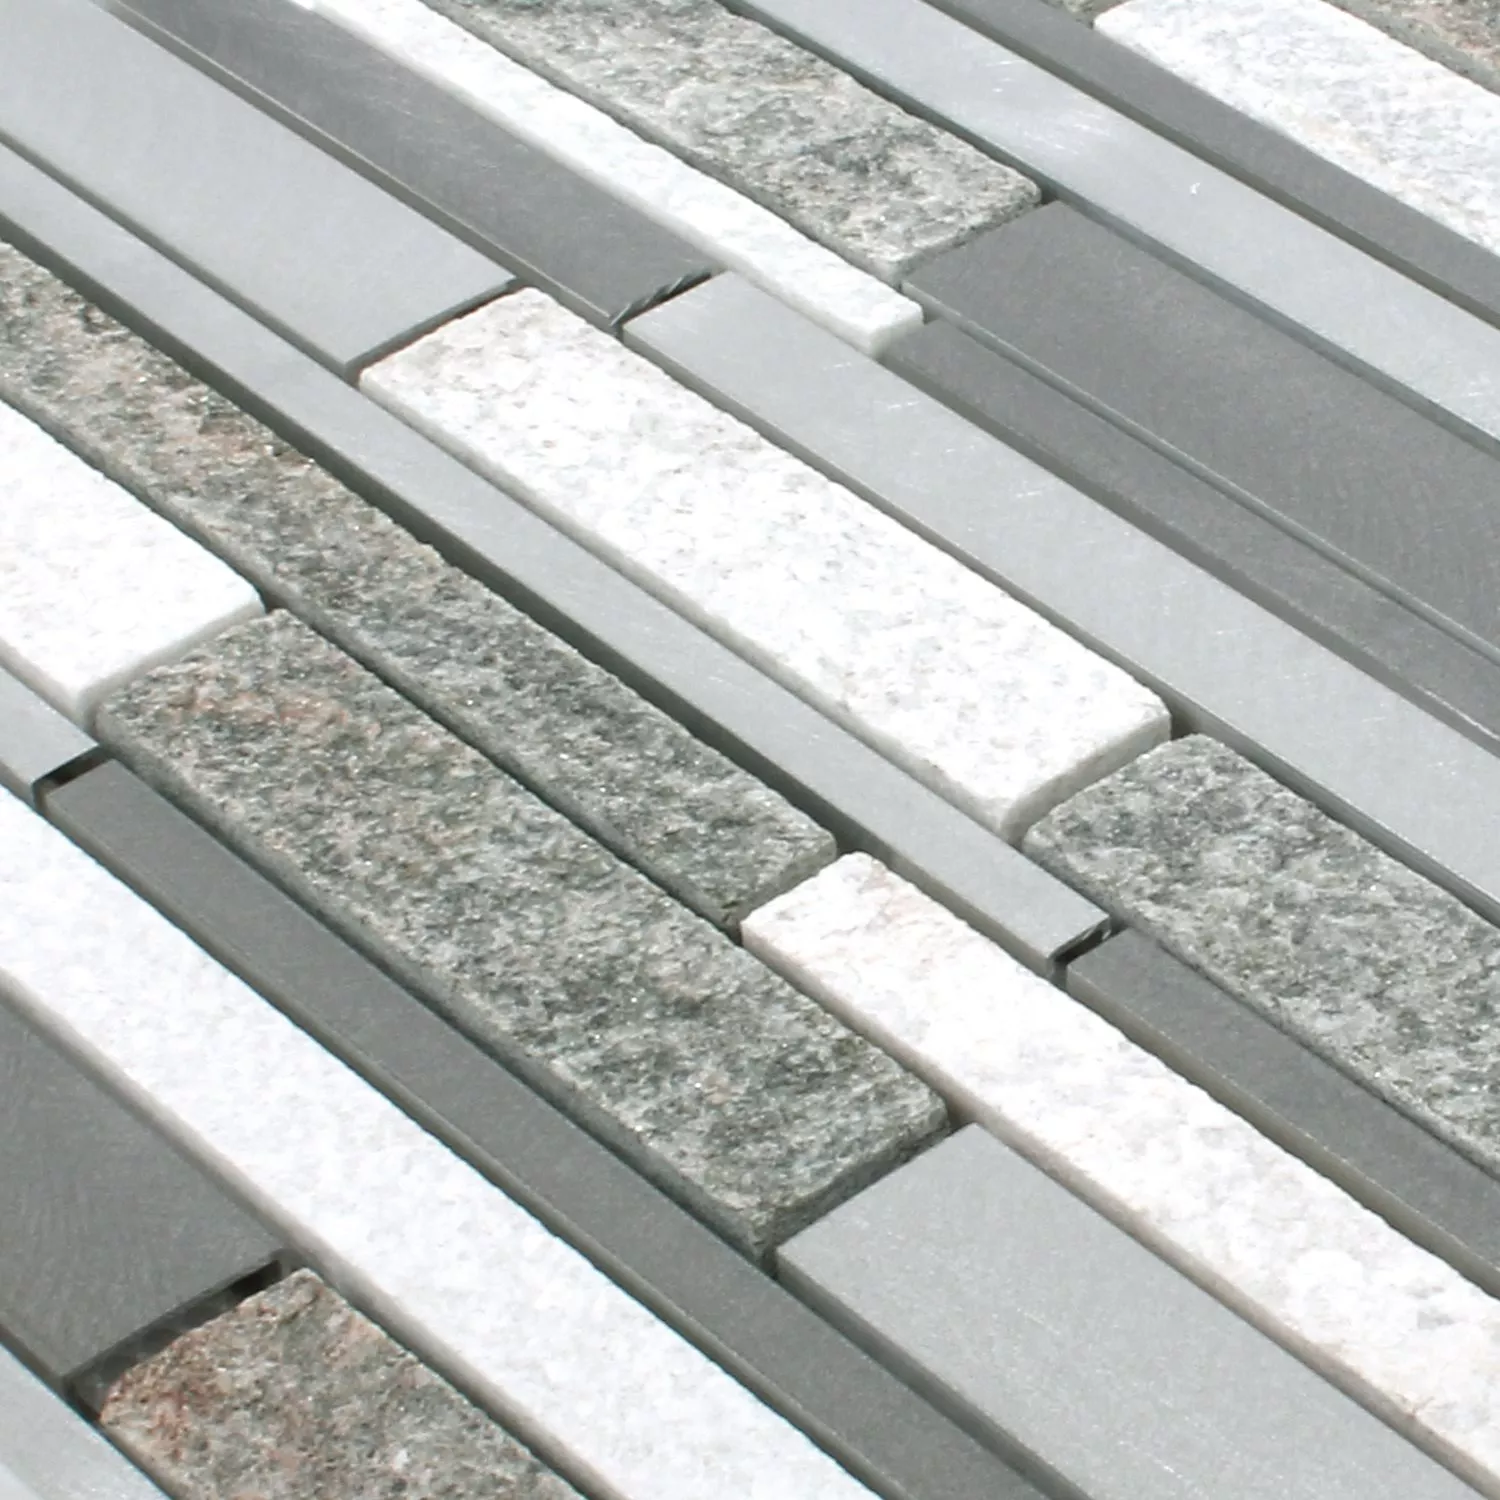 Mosaic Tiles Wolga Quartzite Aluminium Mix